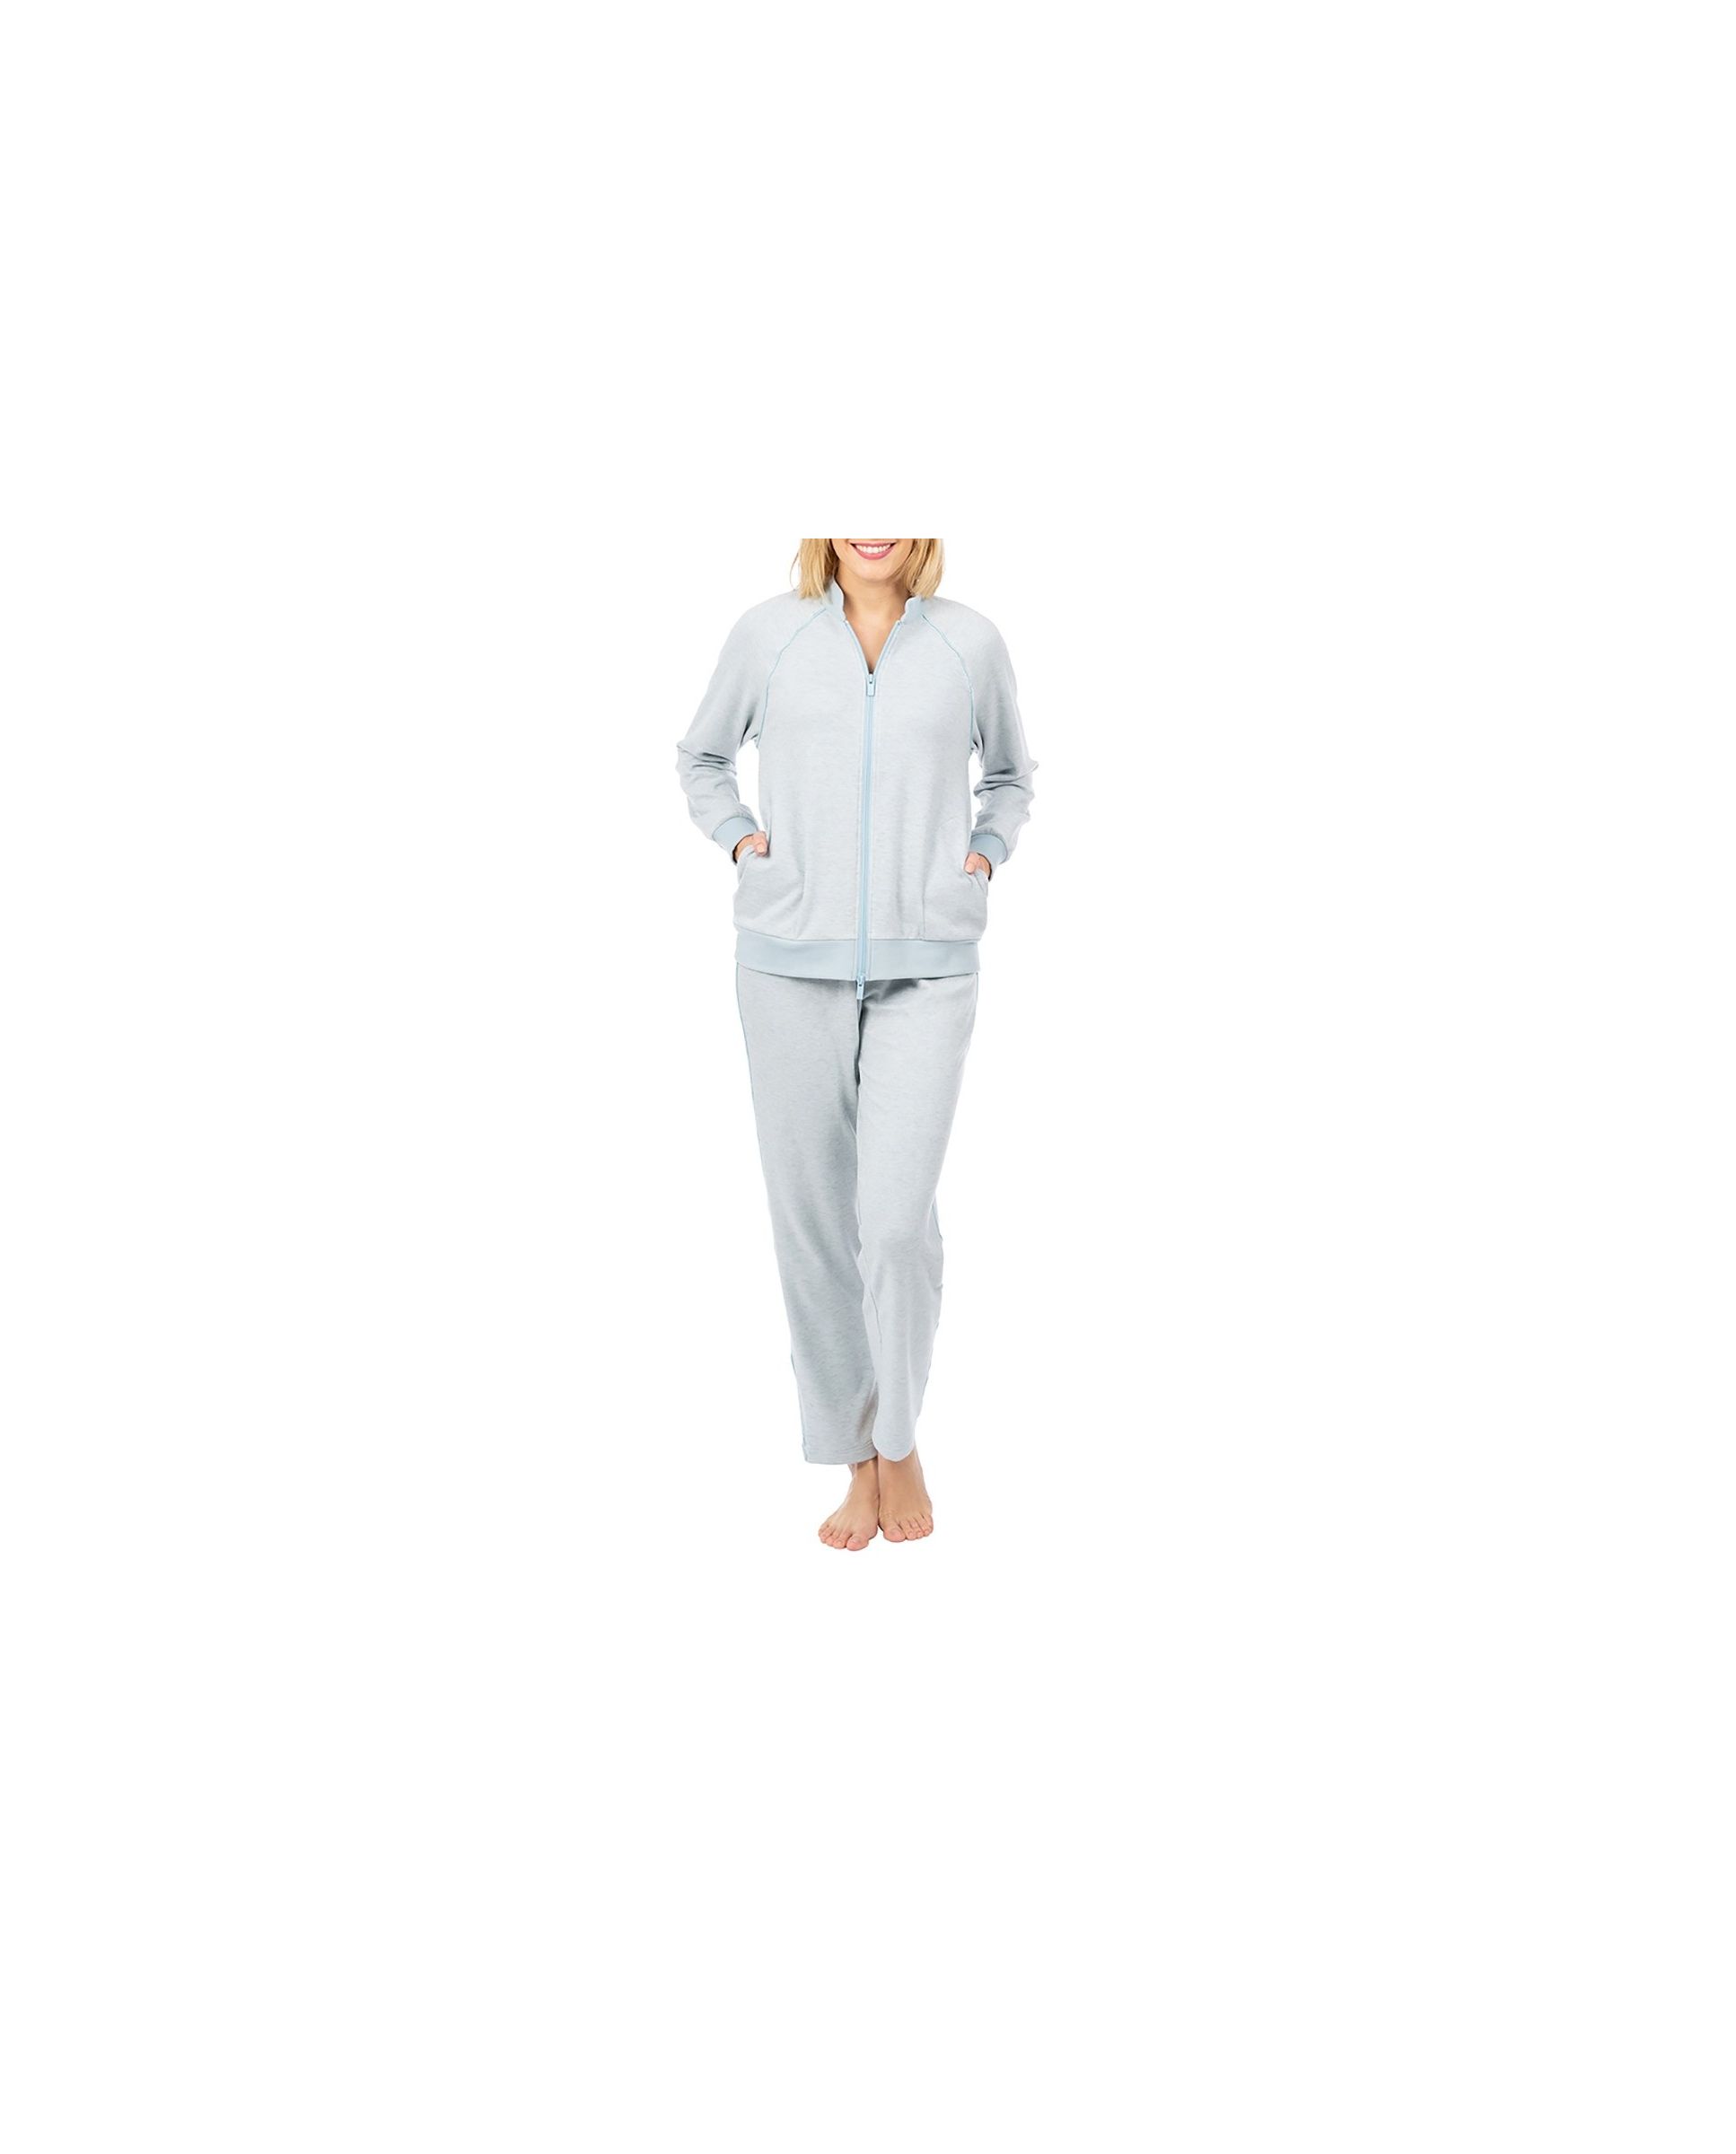 Women's two-piece pyjamas with zip, blue